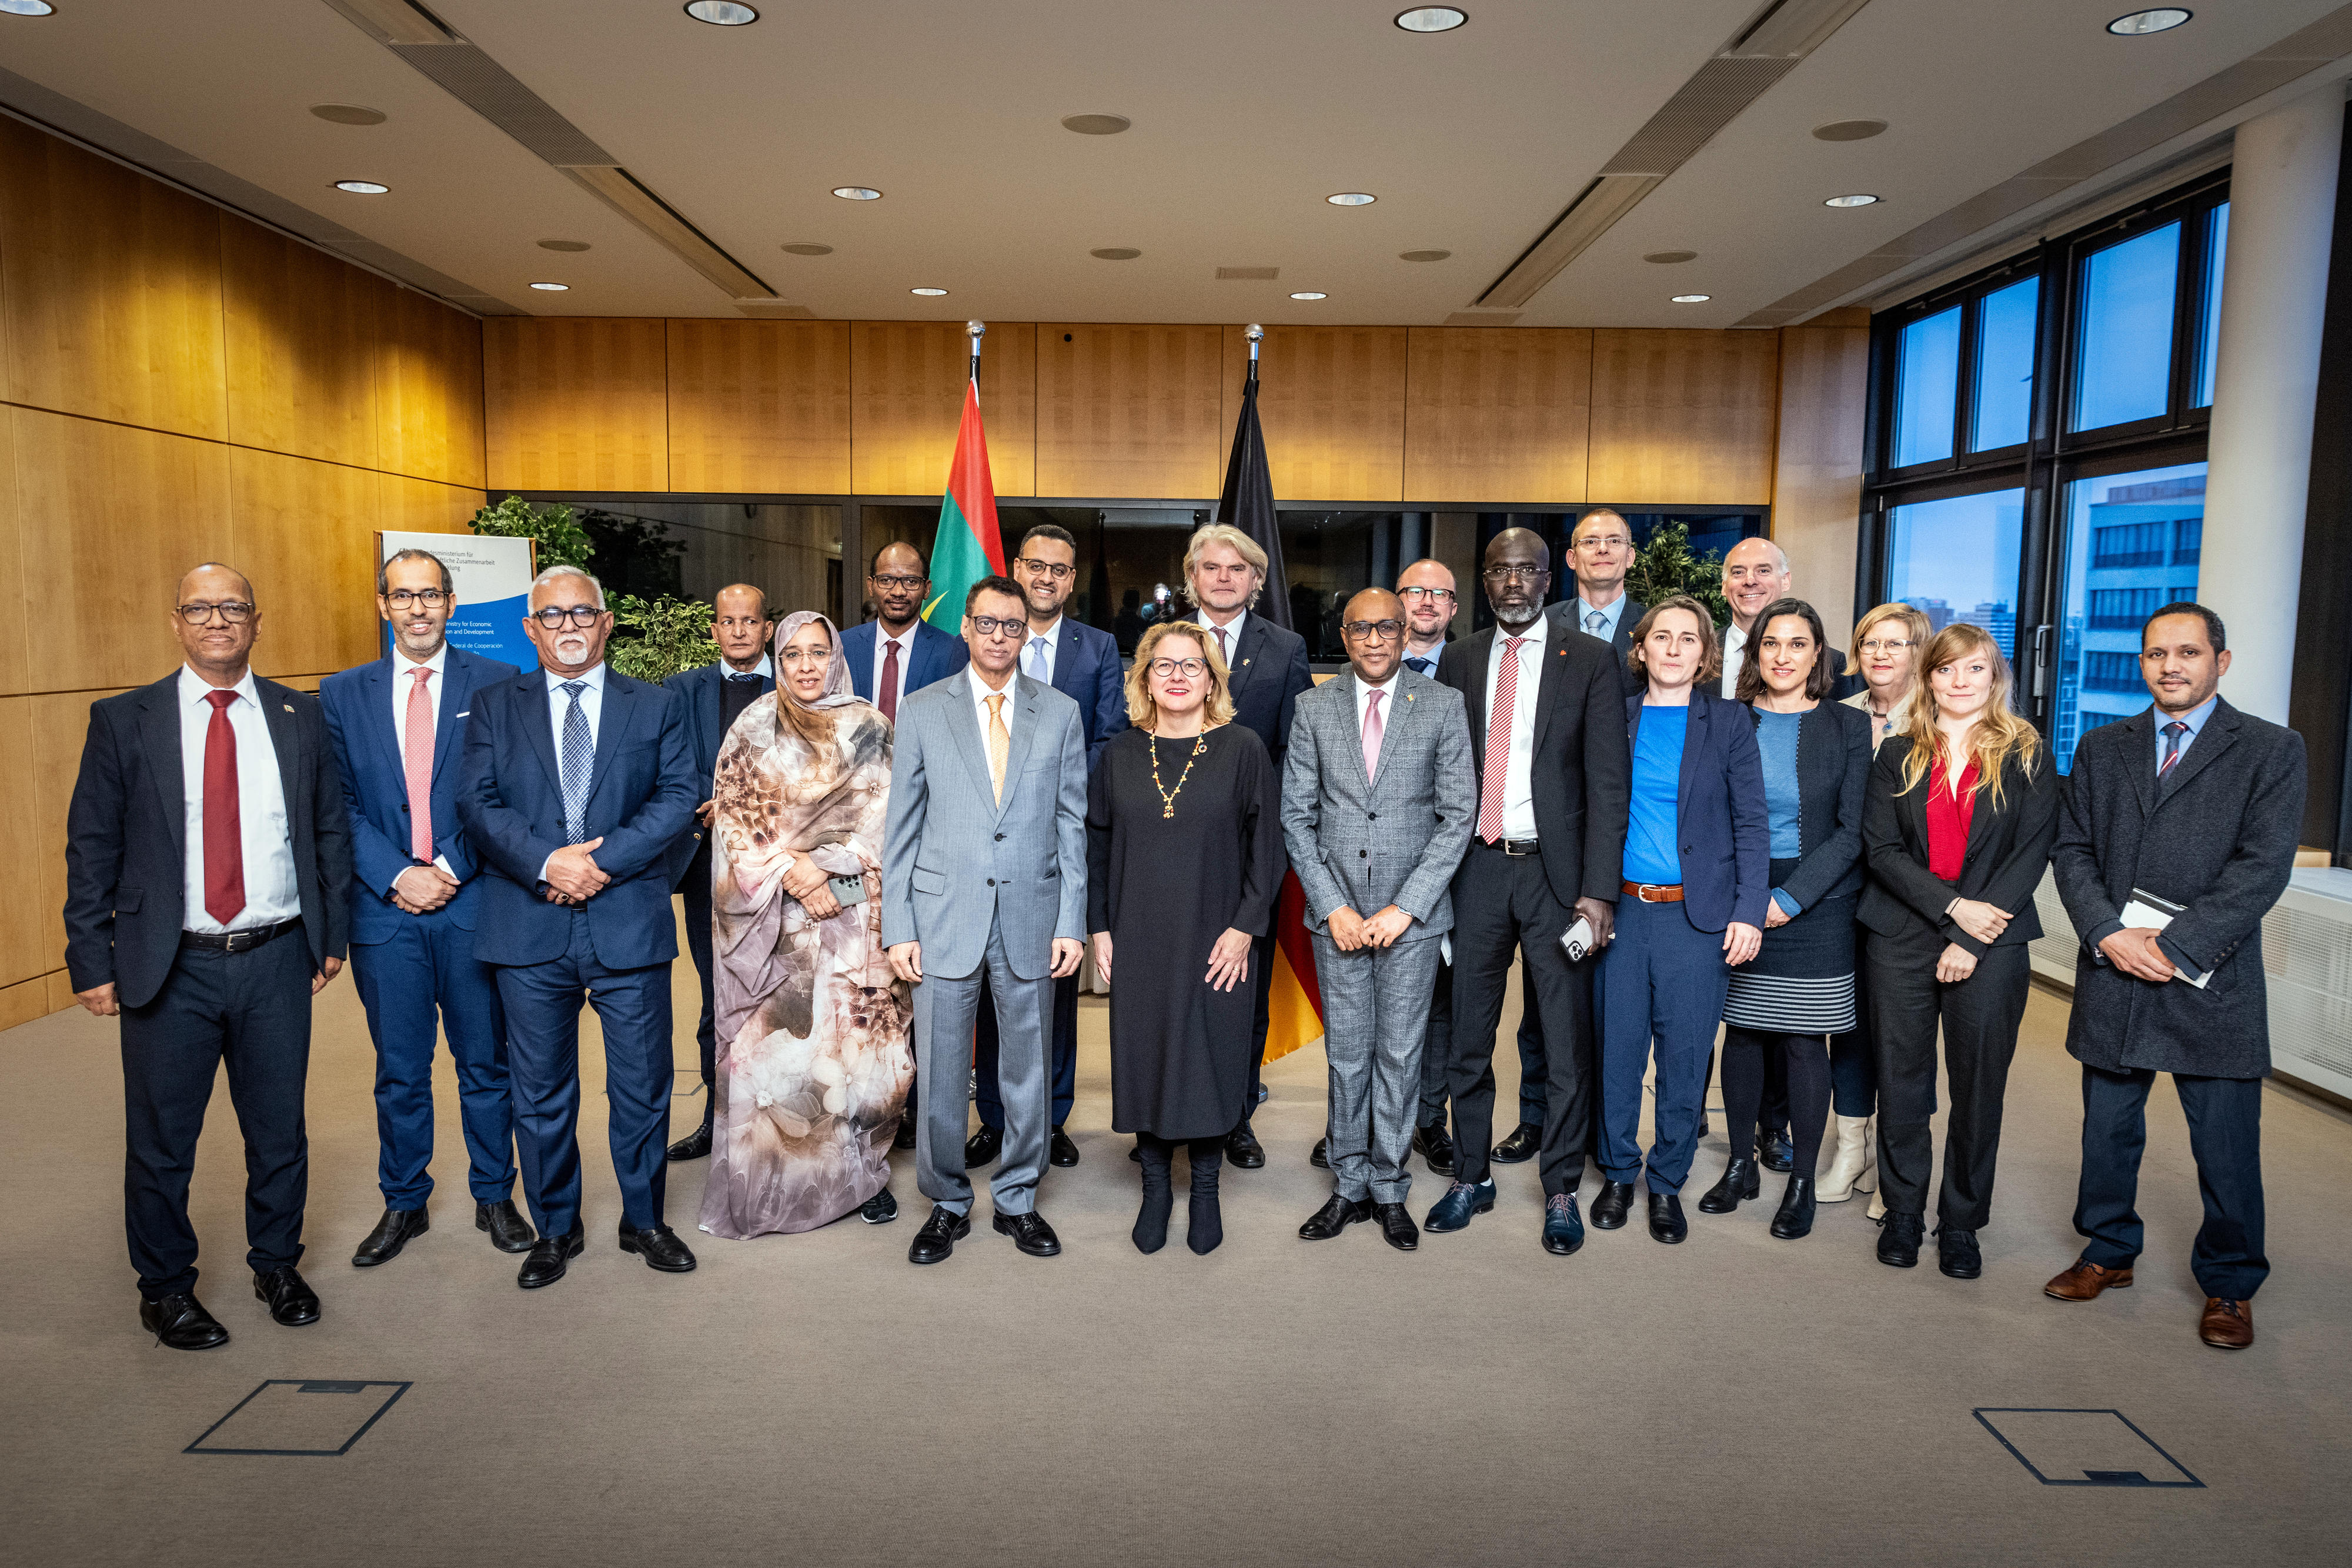 Entwicklungsministerin Svenja Schulze mit den Teilnehmerinnen und Teilnehmern der deutsch-mauretanischen Regierungsverhandlungen in Berlin